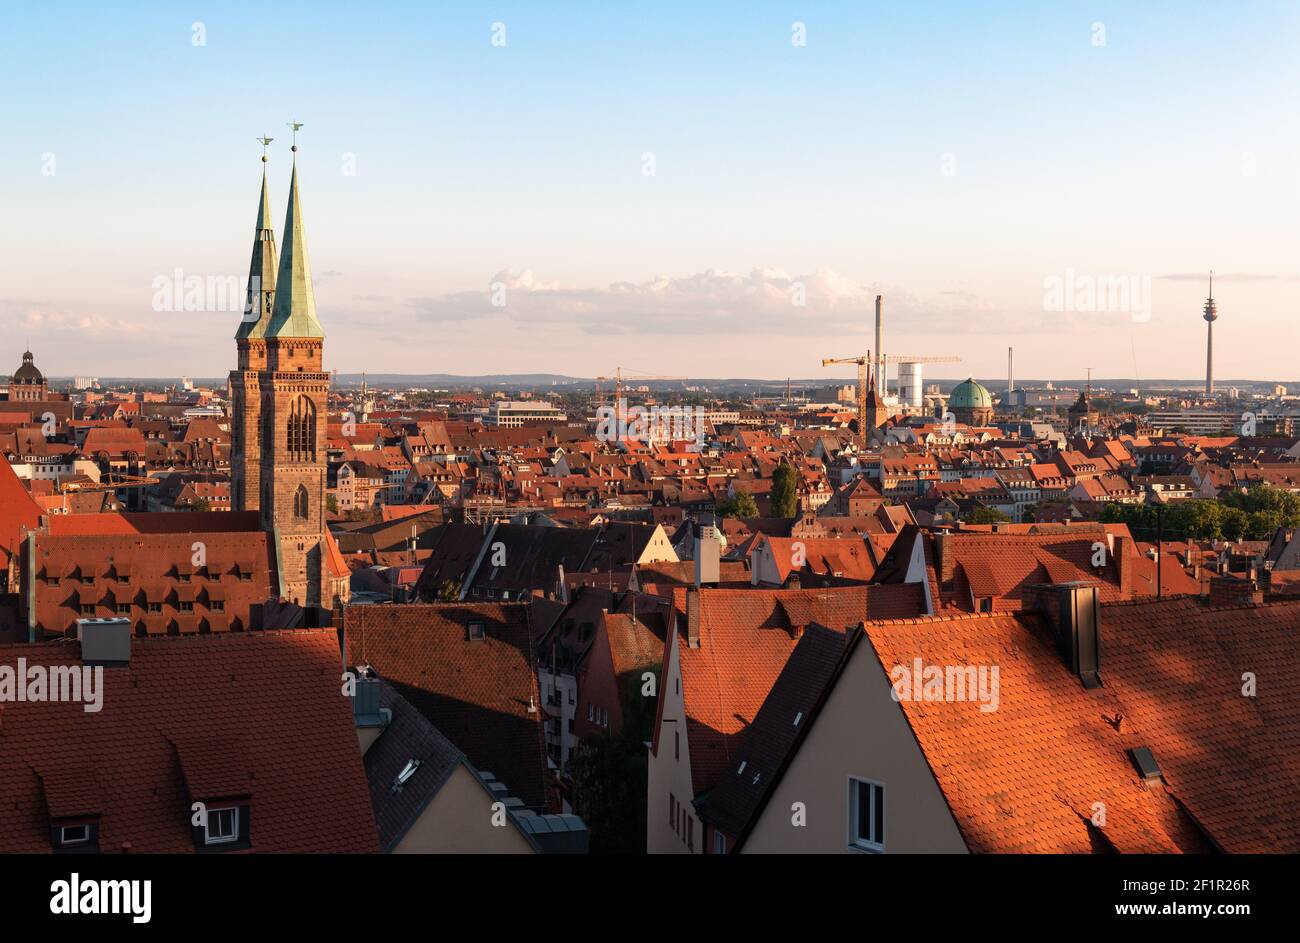 Vue sur la ville de Nuremberg, en Allemagne, avec les clochers de l'église Saint-Lorenz. Banque D'Images